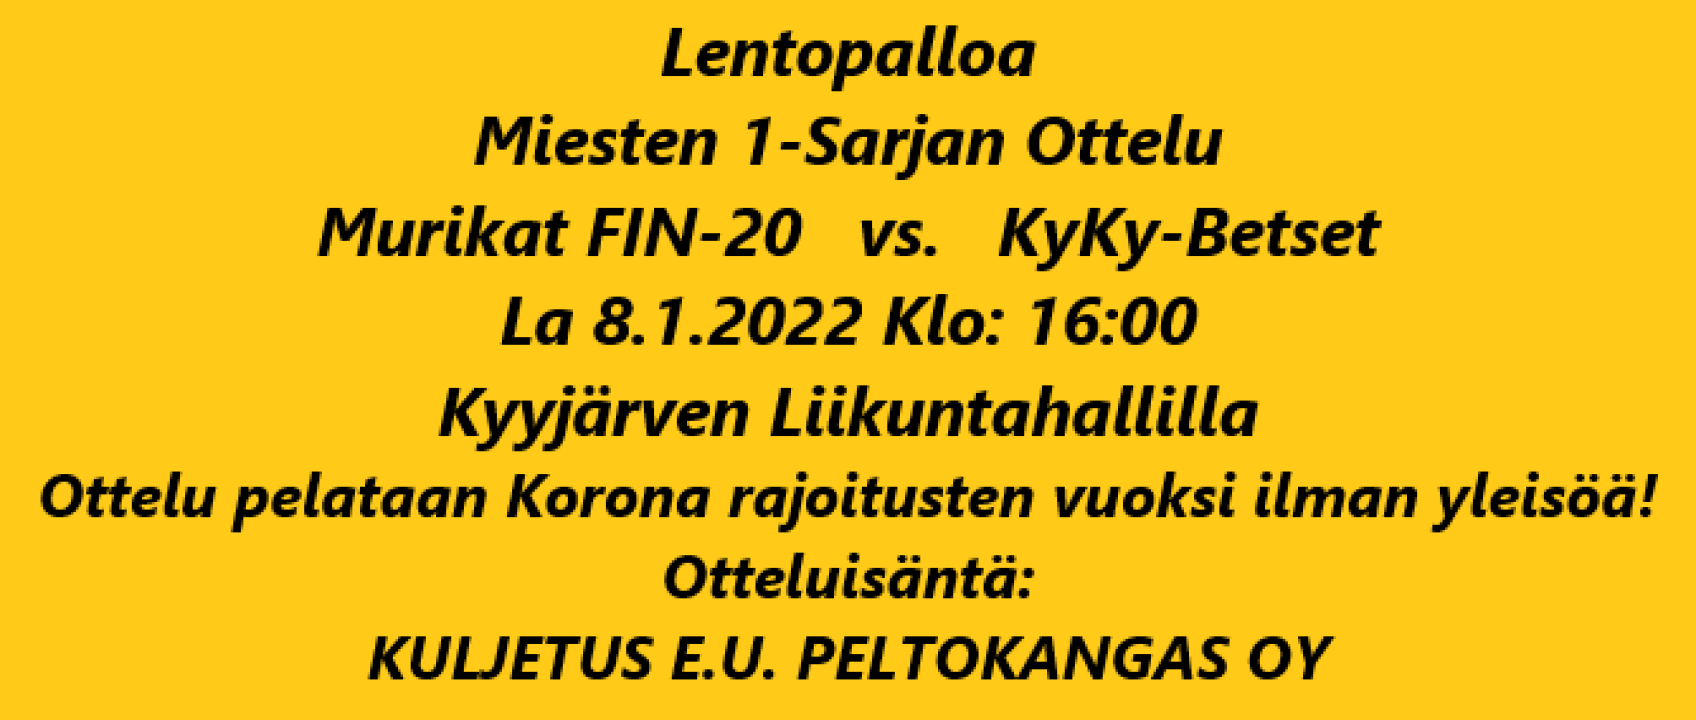 FIN-20 vs KyKy-Betset